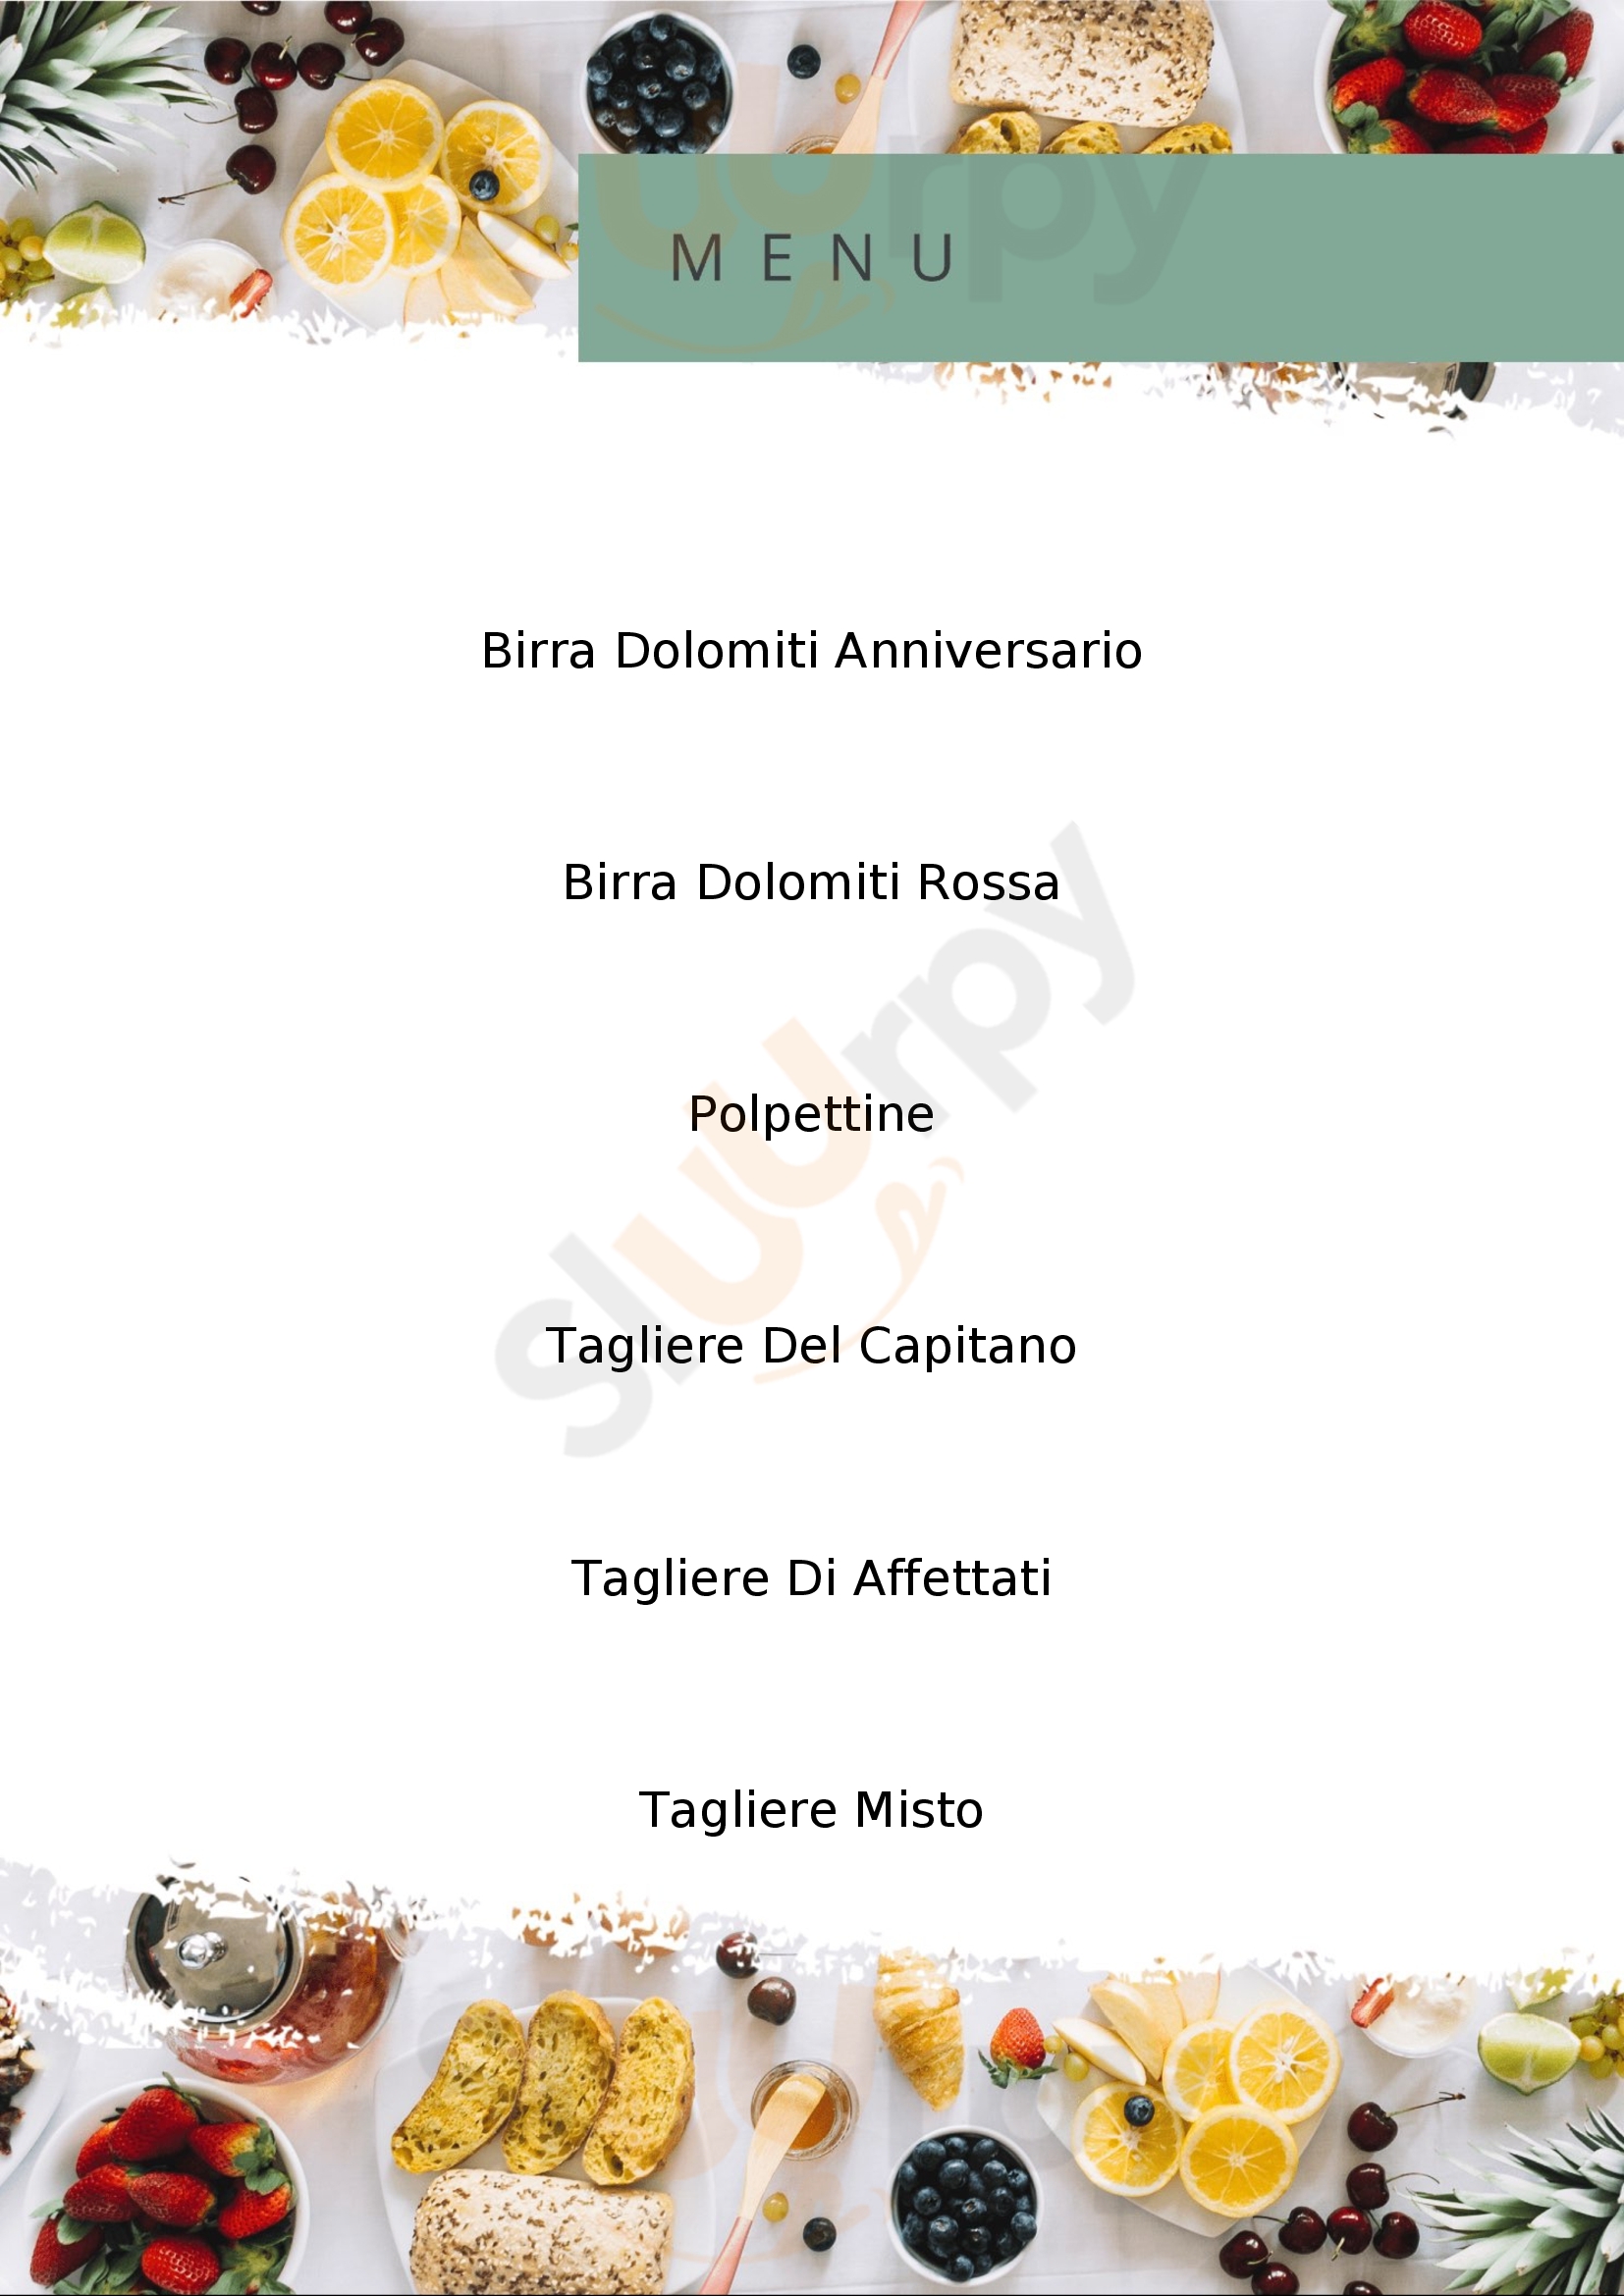 Osteria Al Ponte di Massimo Bortoluzzi Belluno menù 1 pagina